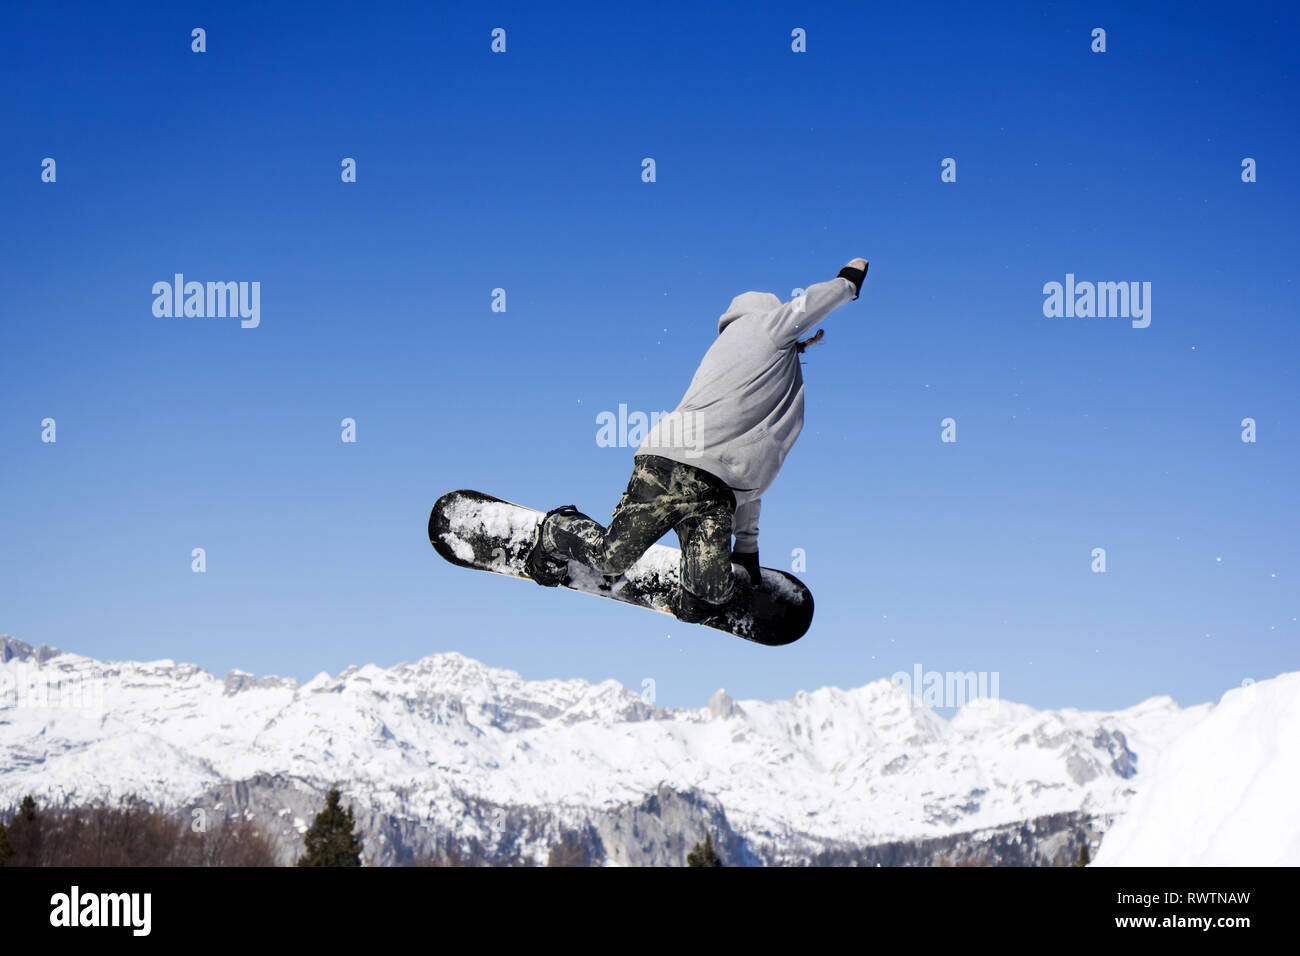 Extreme Snowboarder am Sprung über Berge springen an einem sonnigen Tag Stockfoto